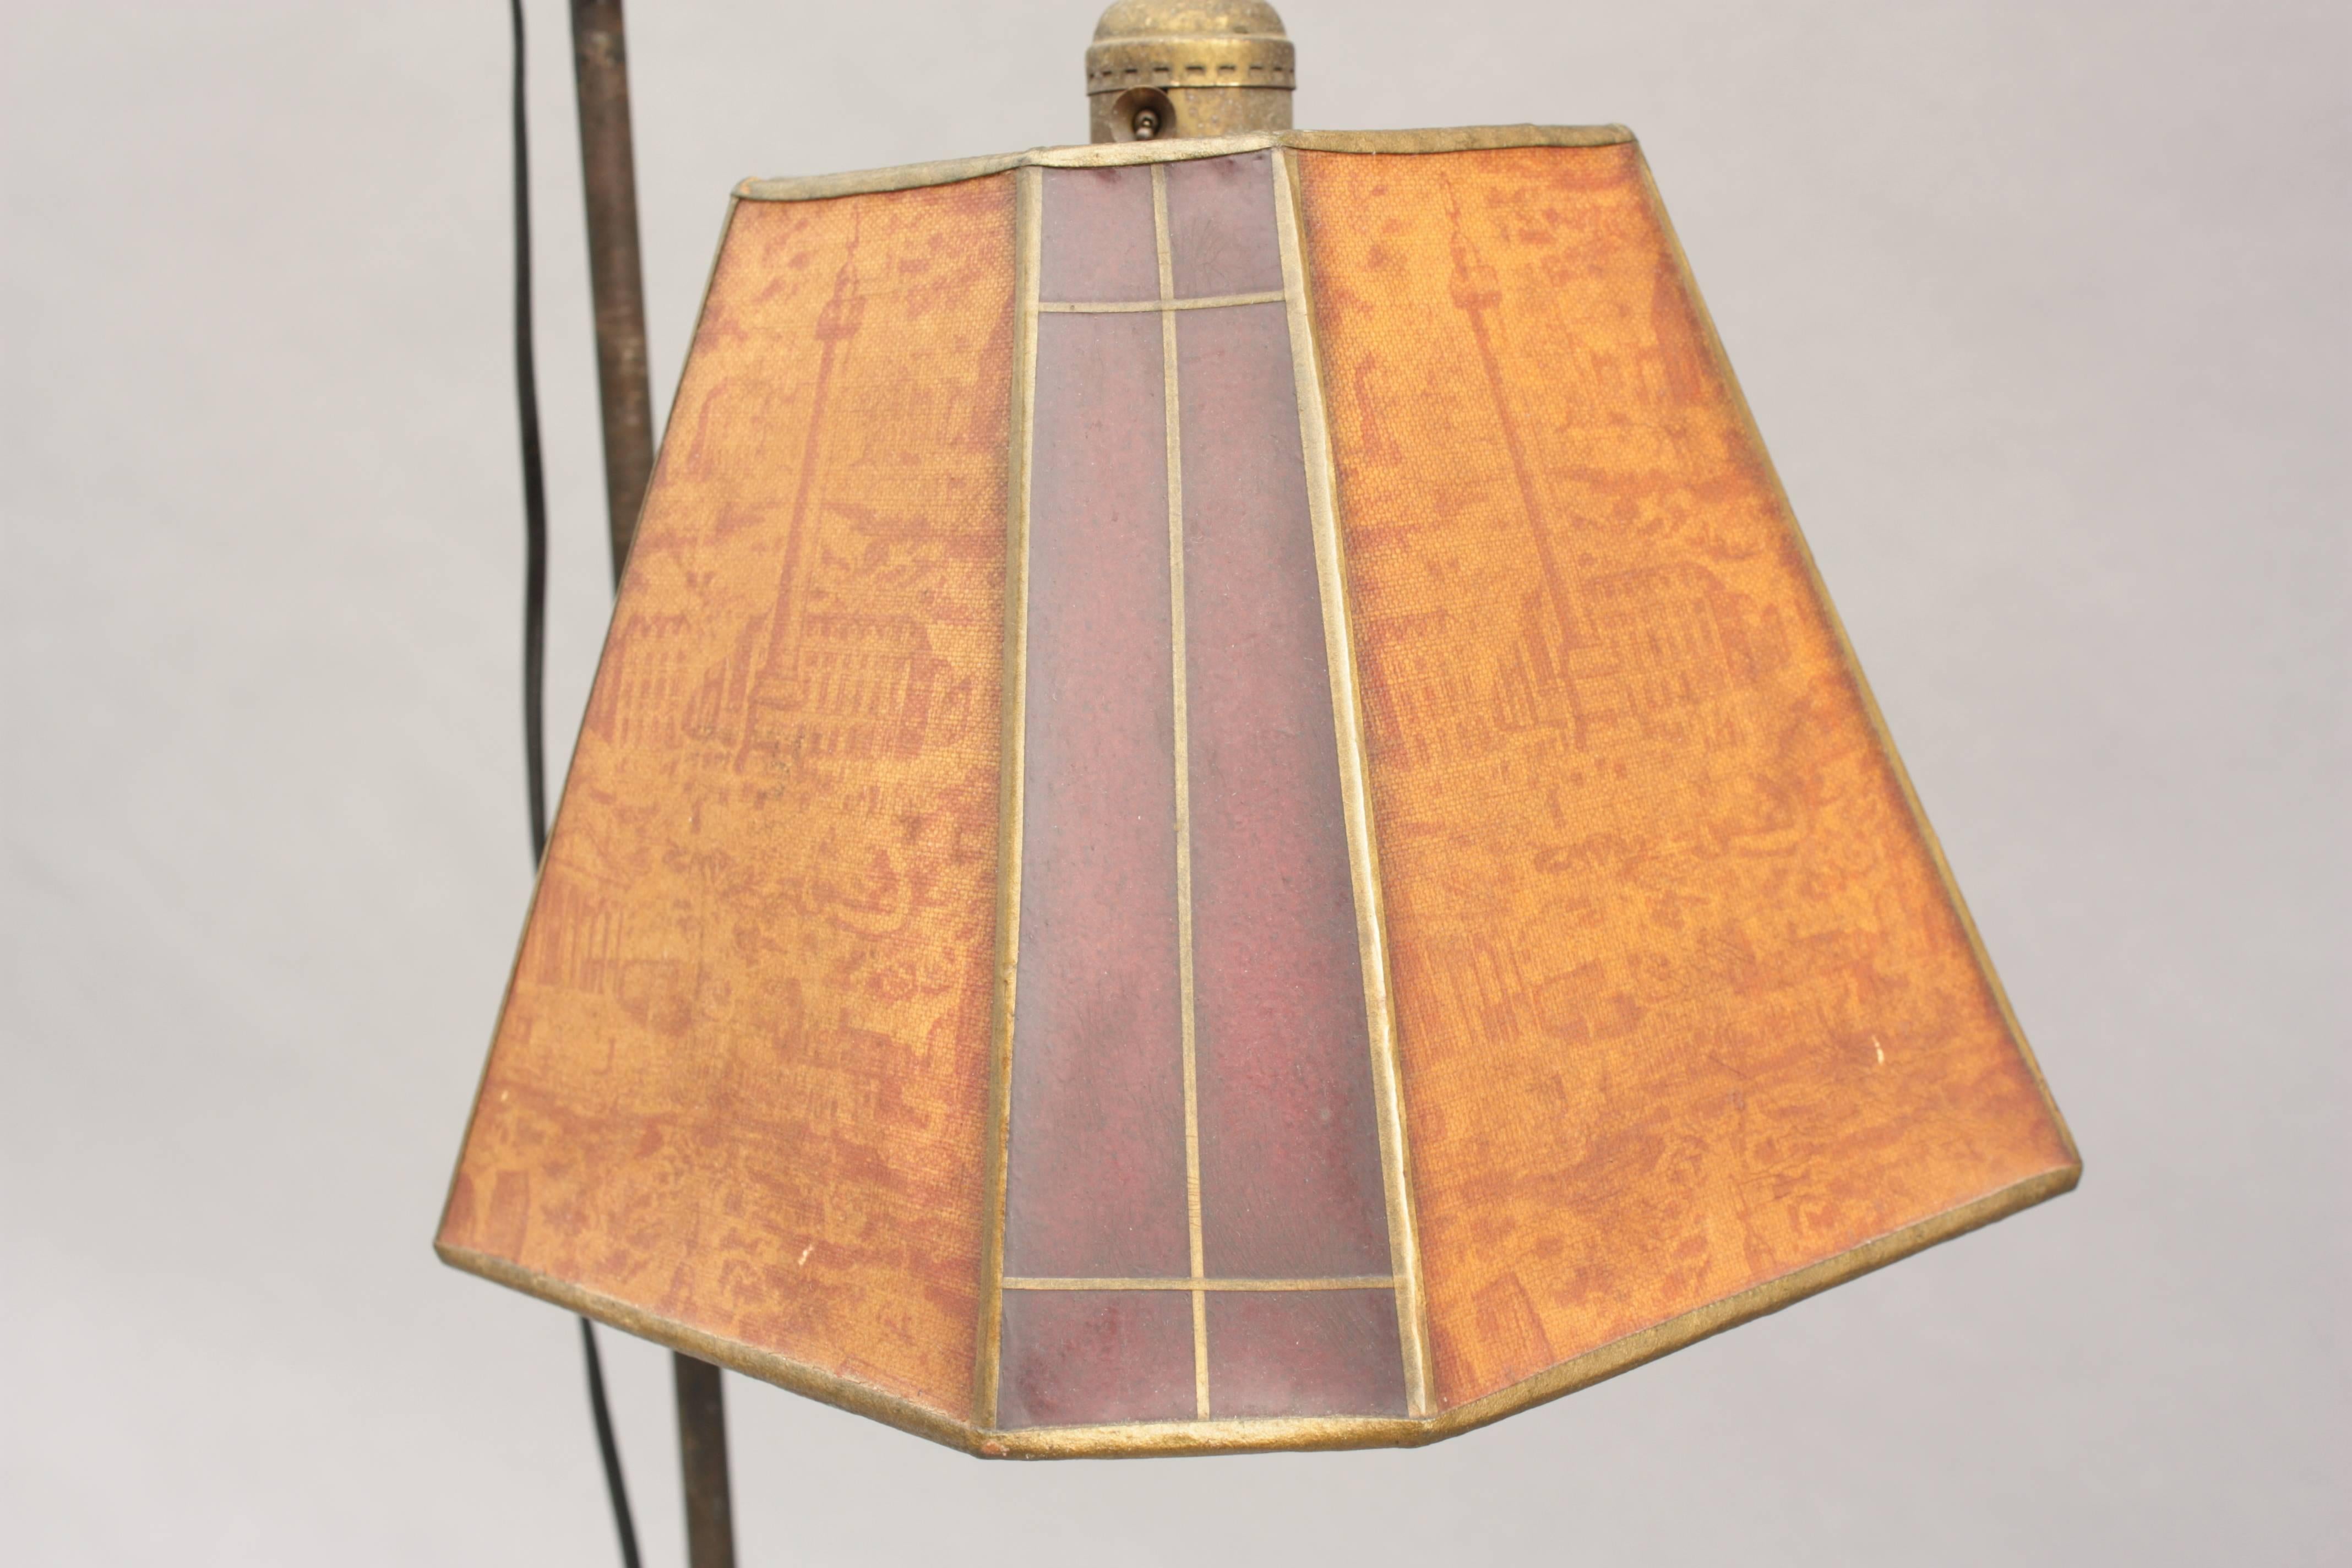 Rancho Monterey Antique Adjustable Bridge Lamp with Original Shade